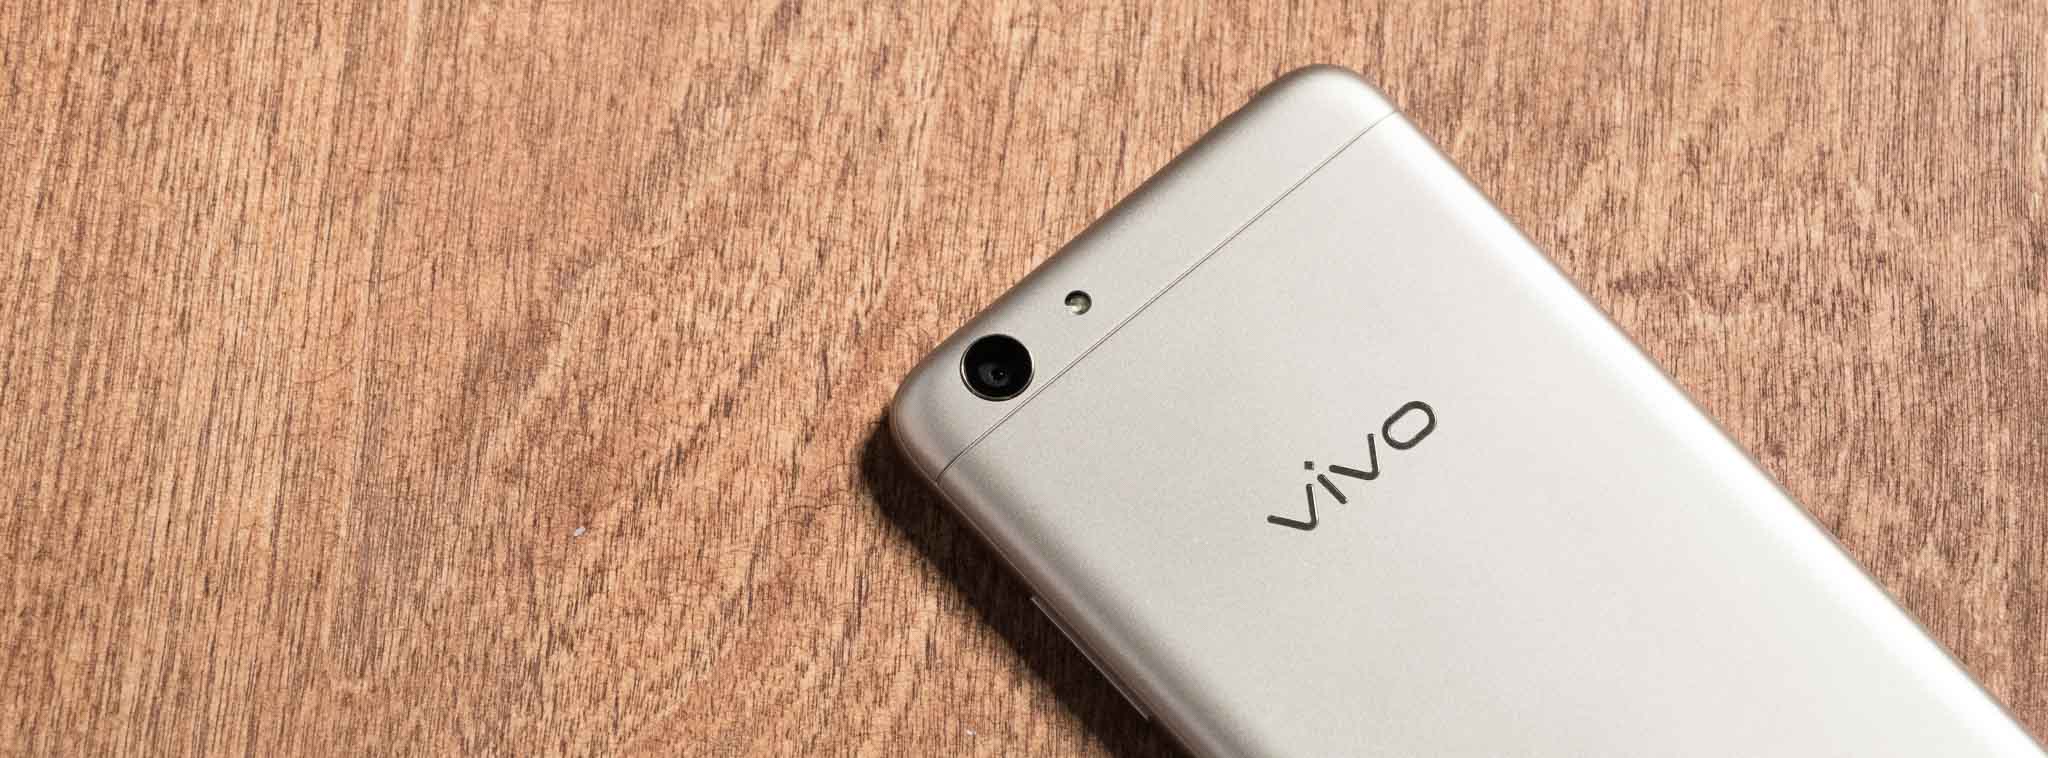 Đánh giá nhanh Vivo Y53 3.39 triệu đồng – Mọi thứ tàm tạm, ngoại trừ màn hình